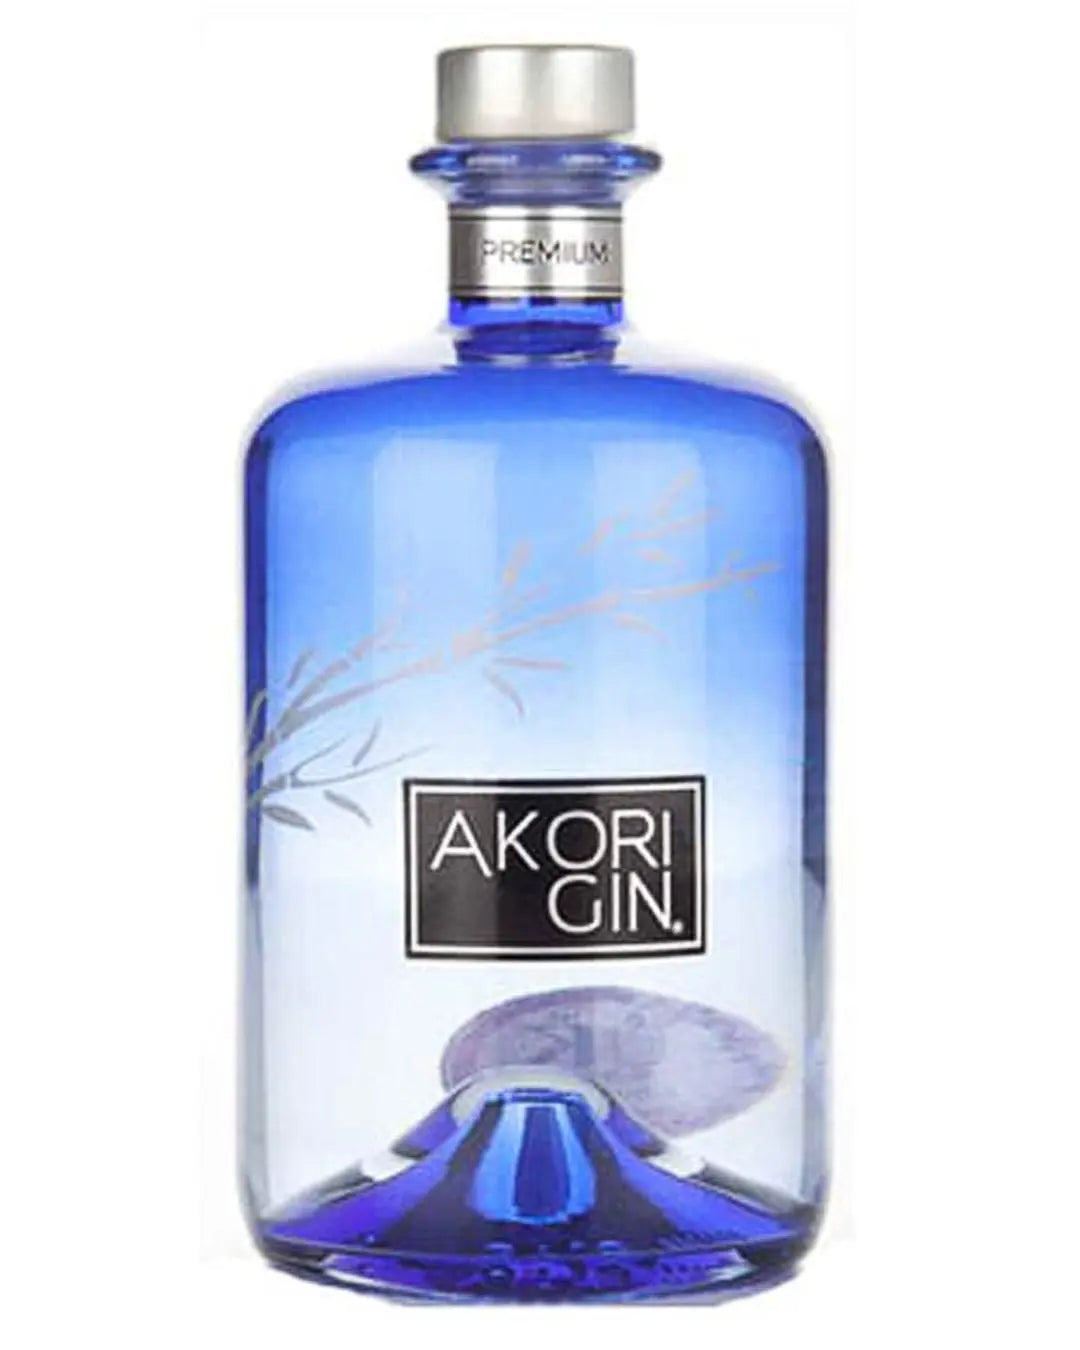 Akori Premium Gin, 70 cl Gin